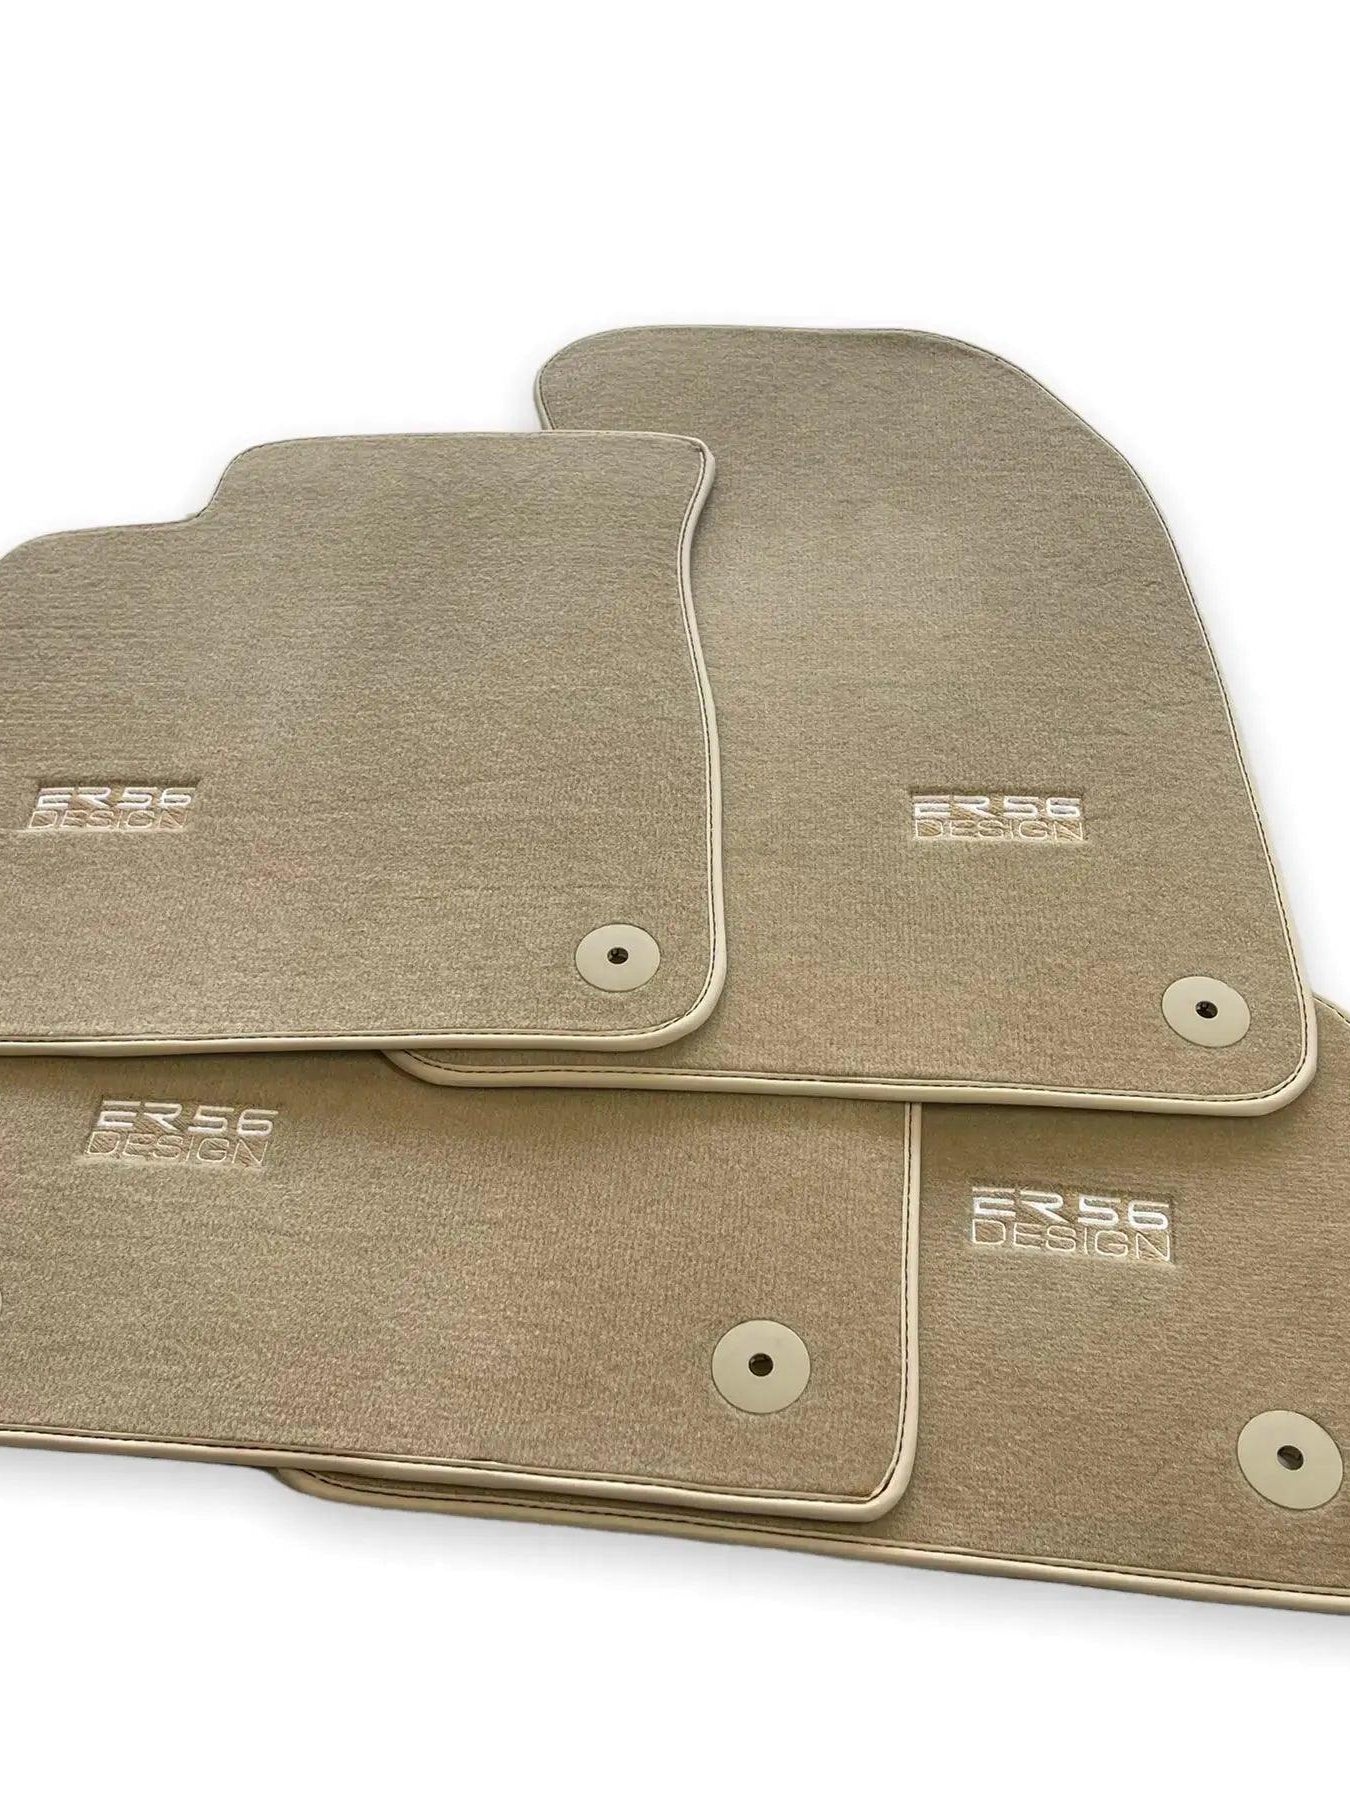 Beige Floor Mats for A7 - C8 (2018-2023) | ER56 Design - AutoWin